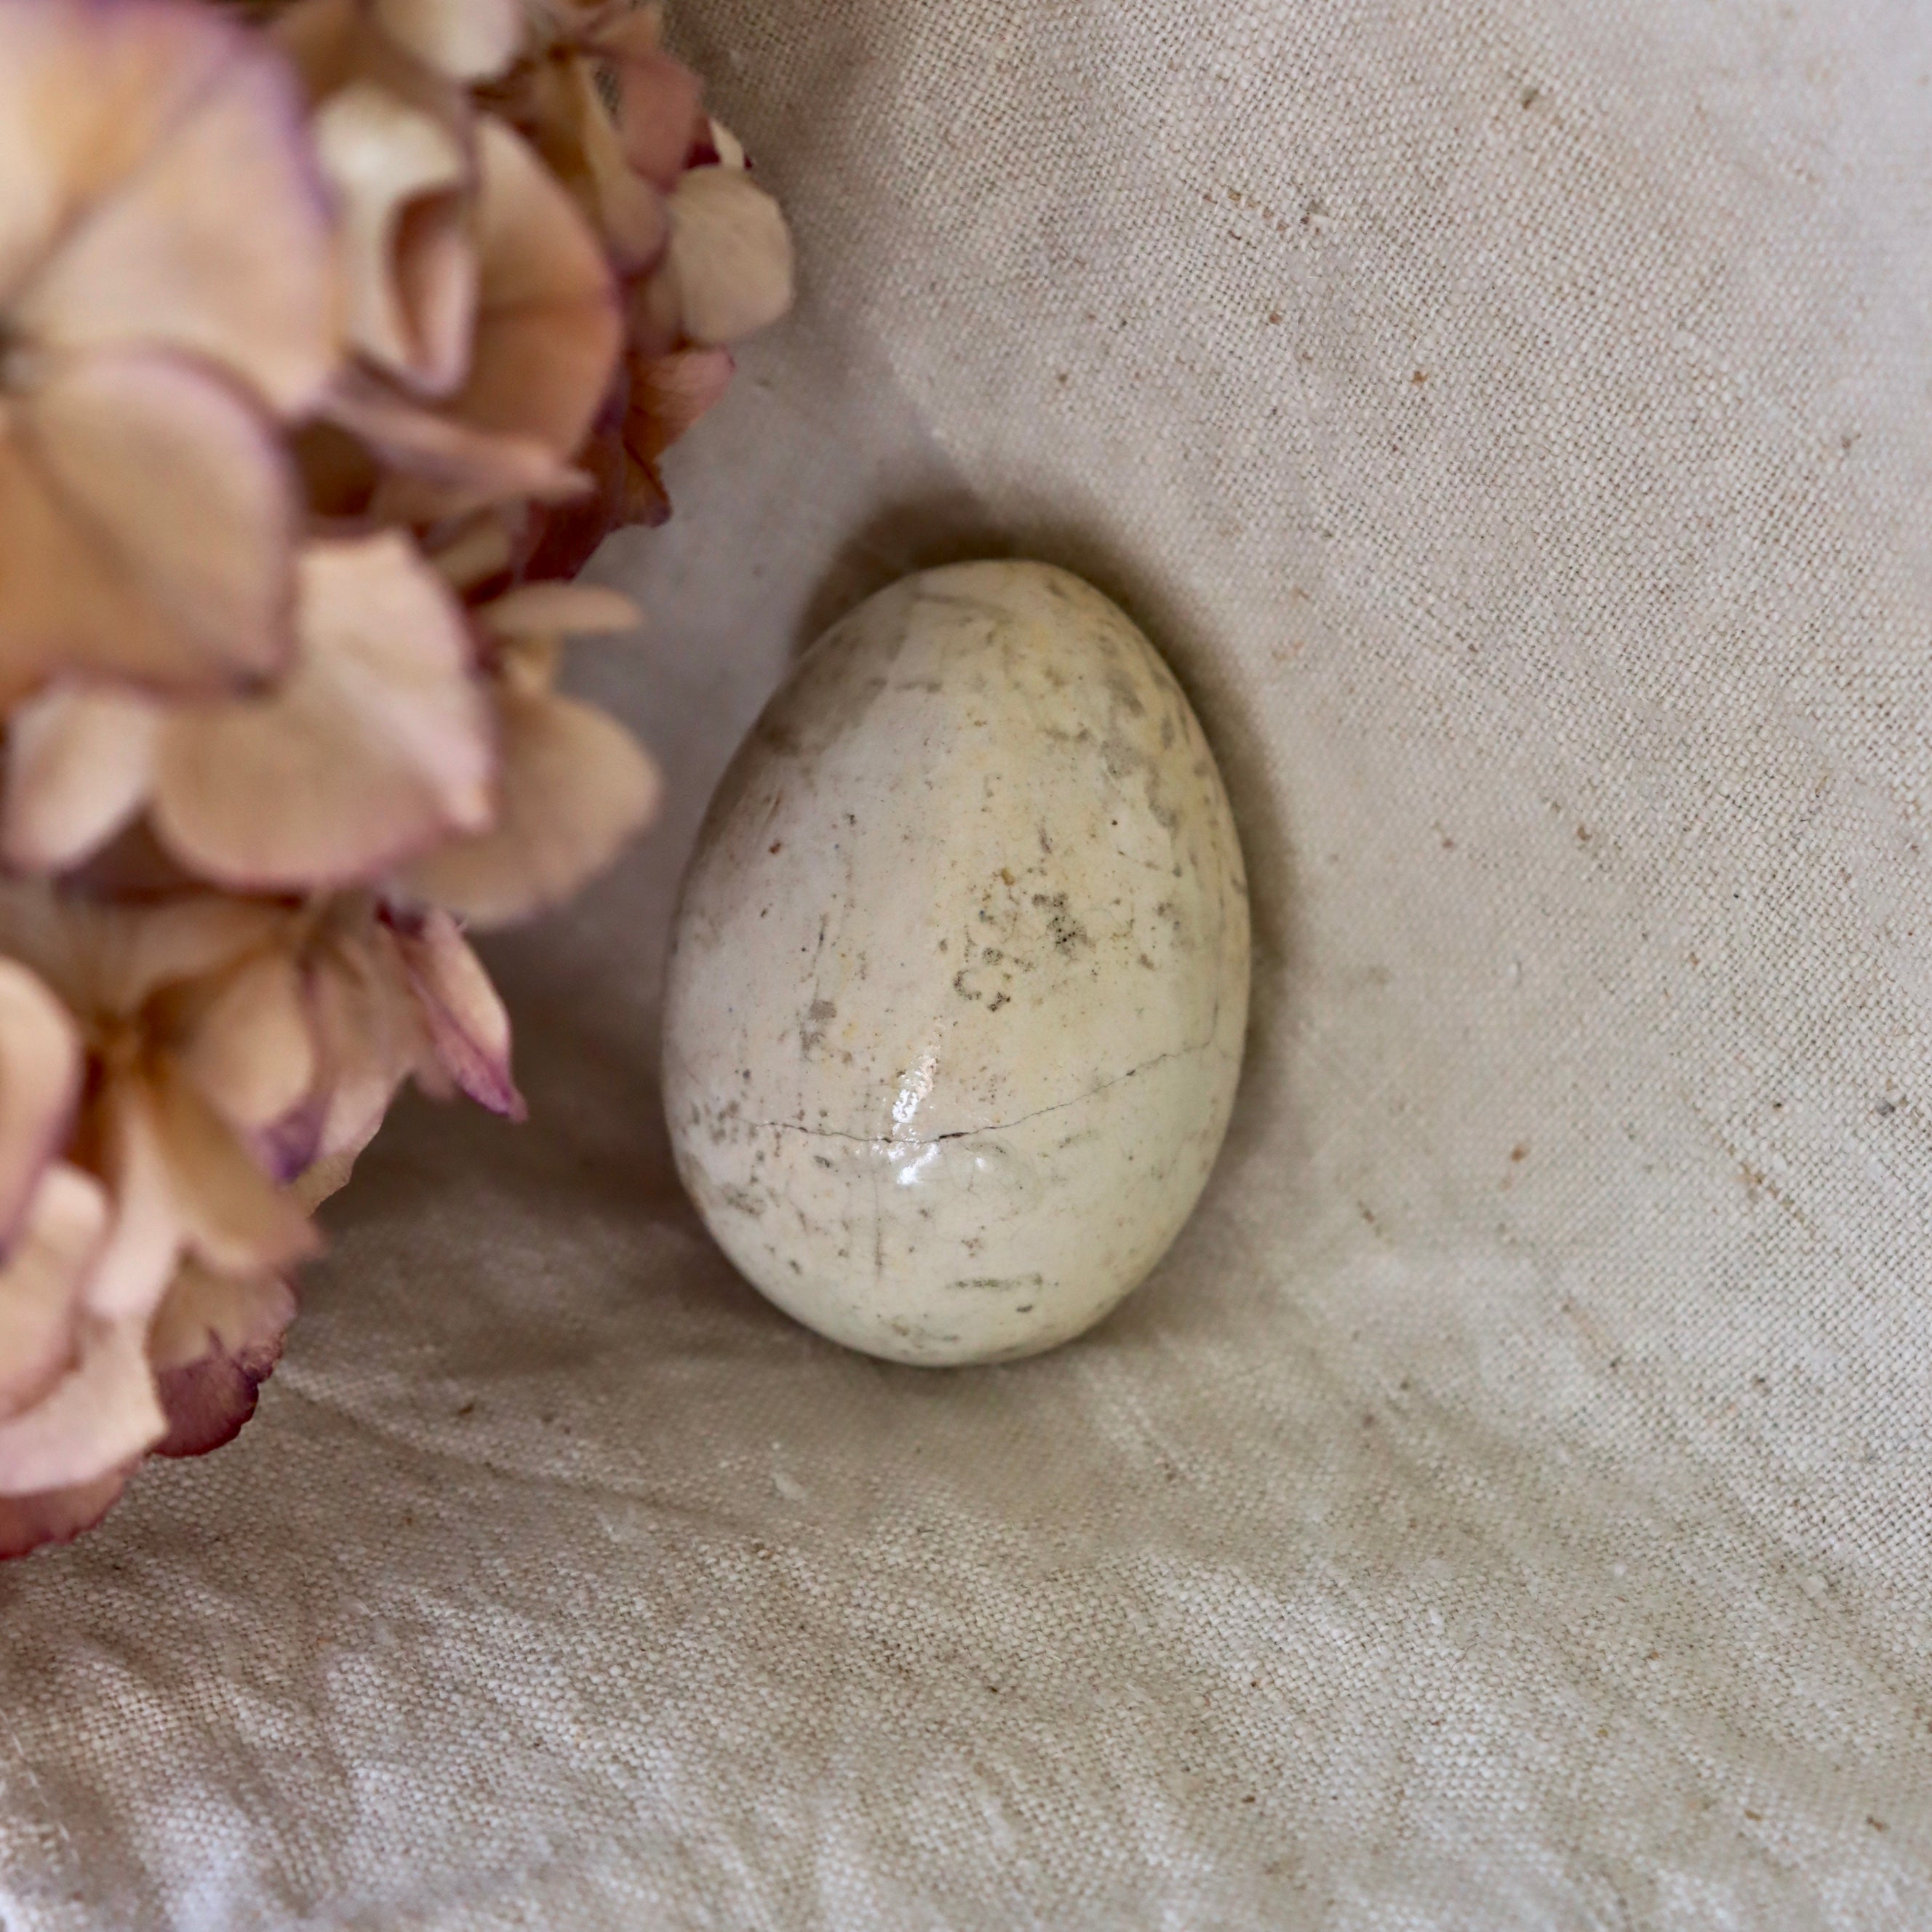 Antique Ceramic Broody Eggs